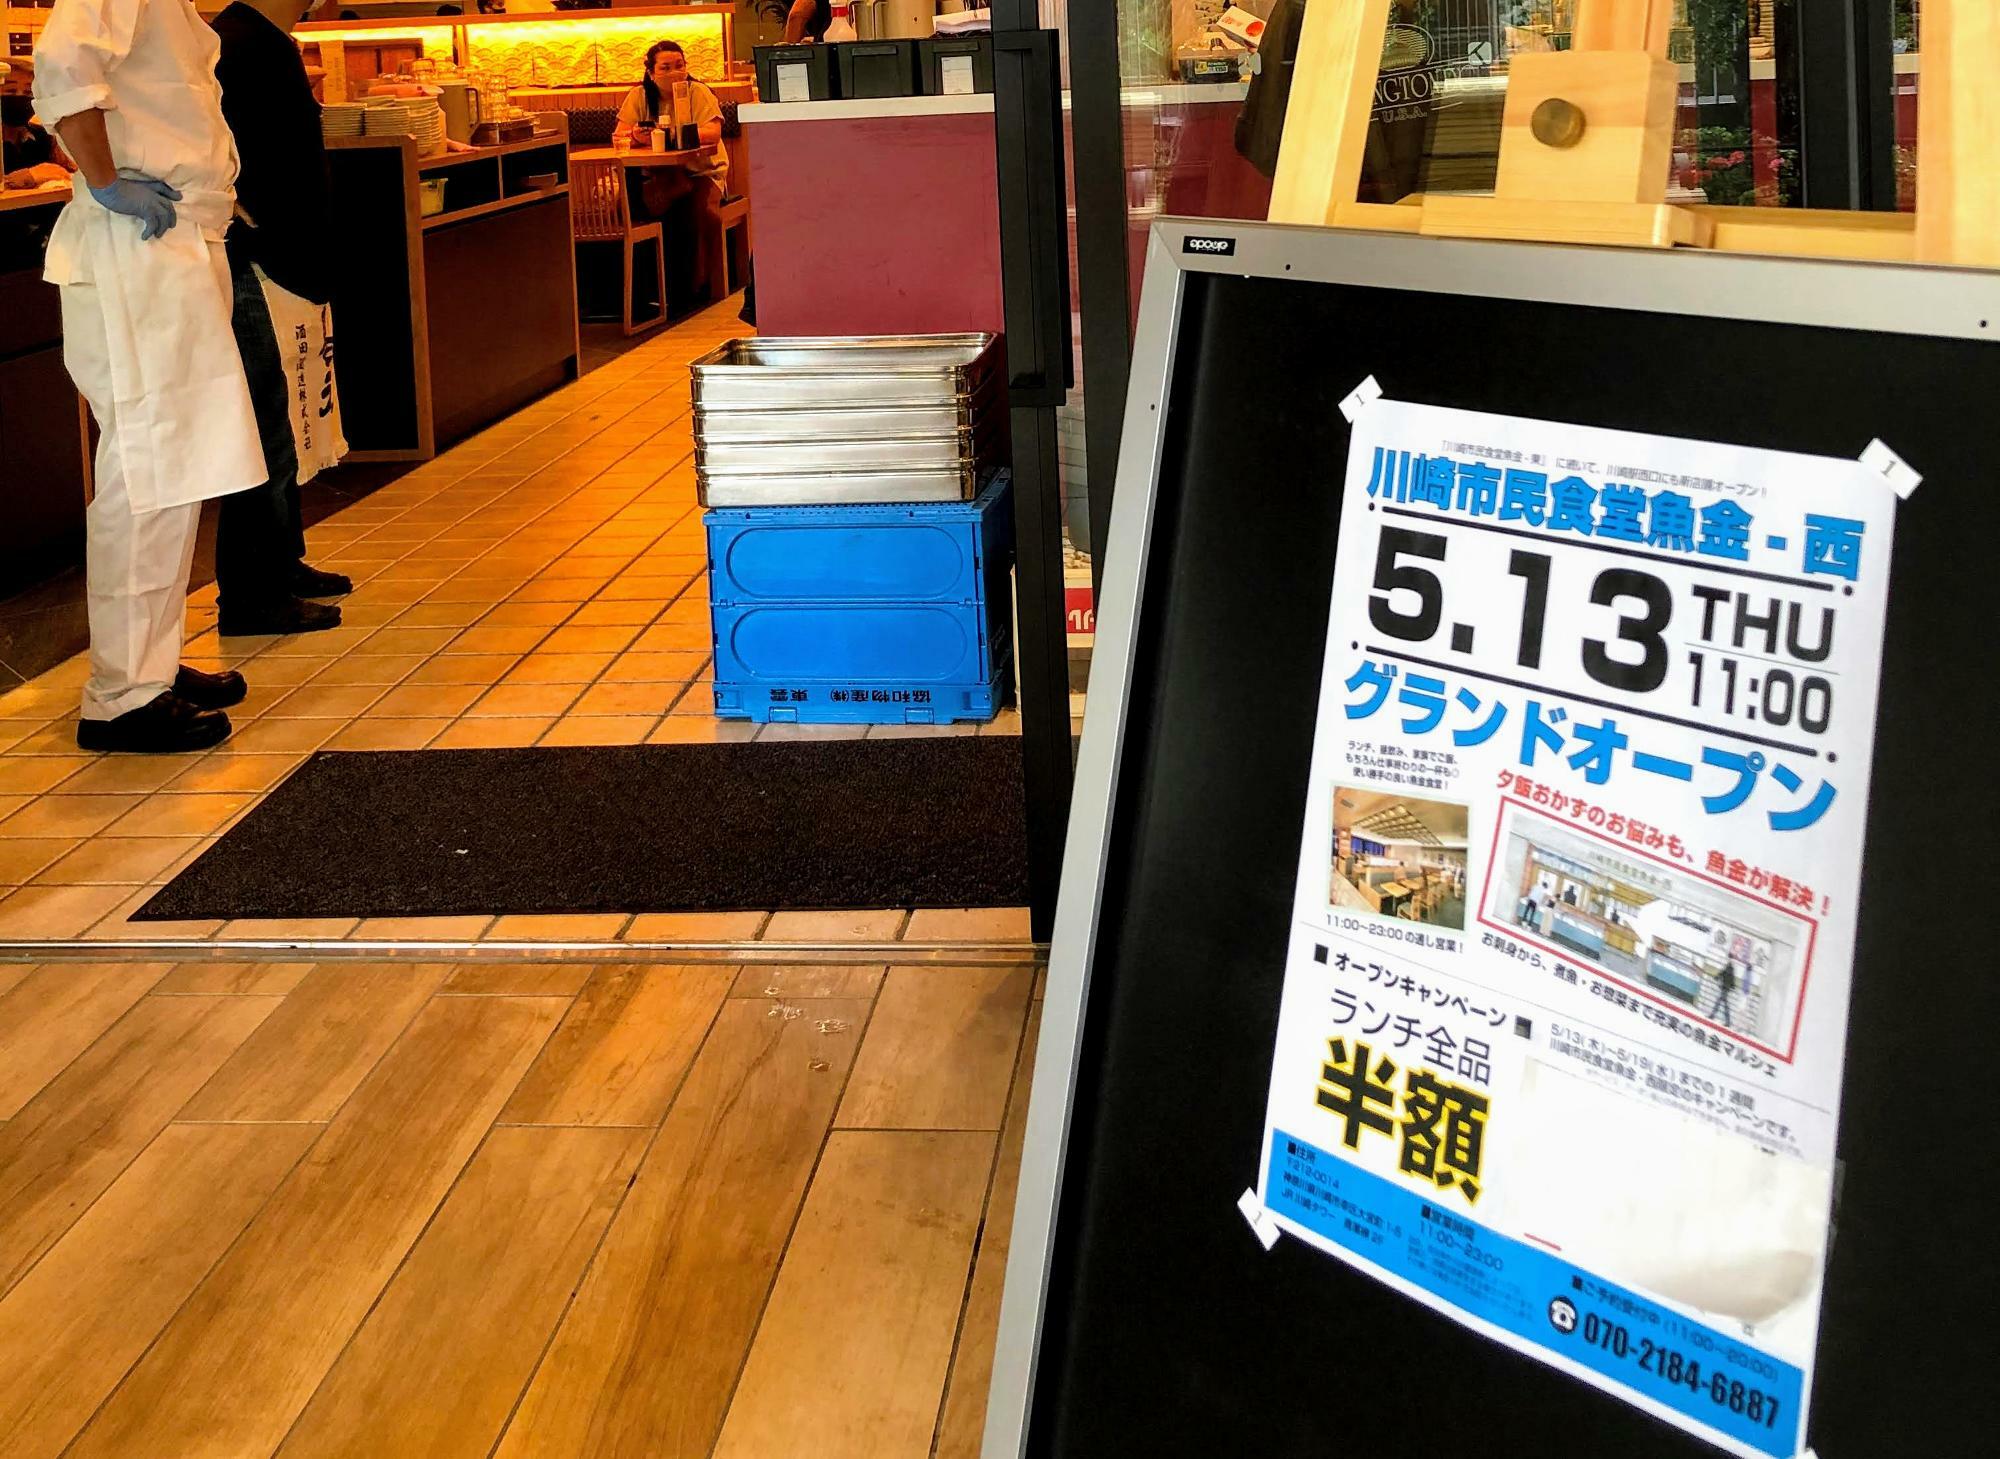 一週間、ランチを半額で提供している「川崎市民食堂 魚金 西」のテラス側の入り口